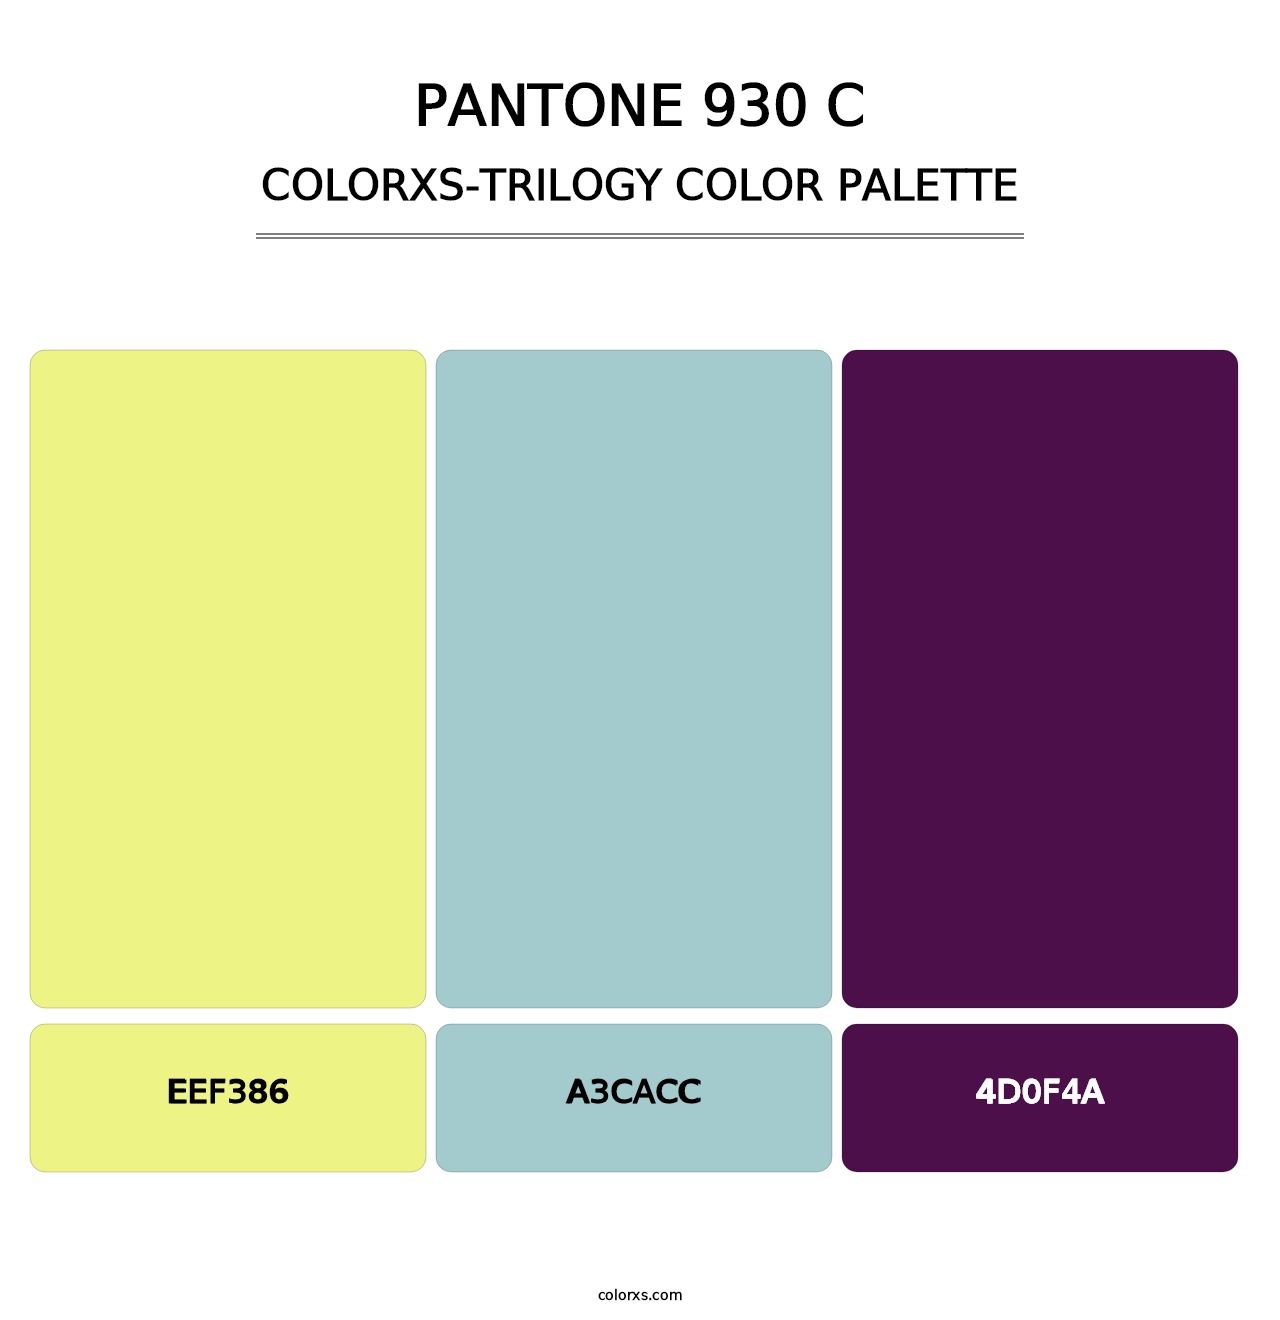 PANTONE 930 C - Colorxs Trilogy Palette